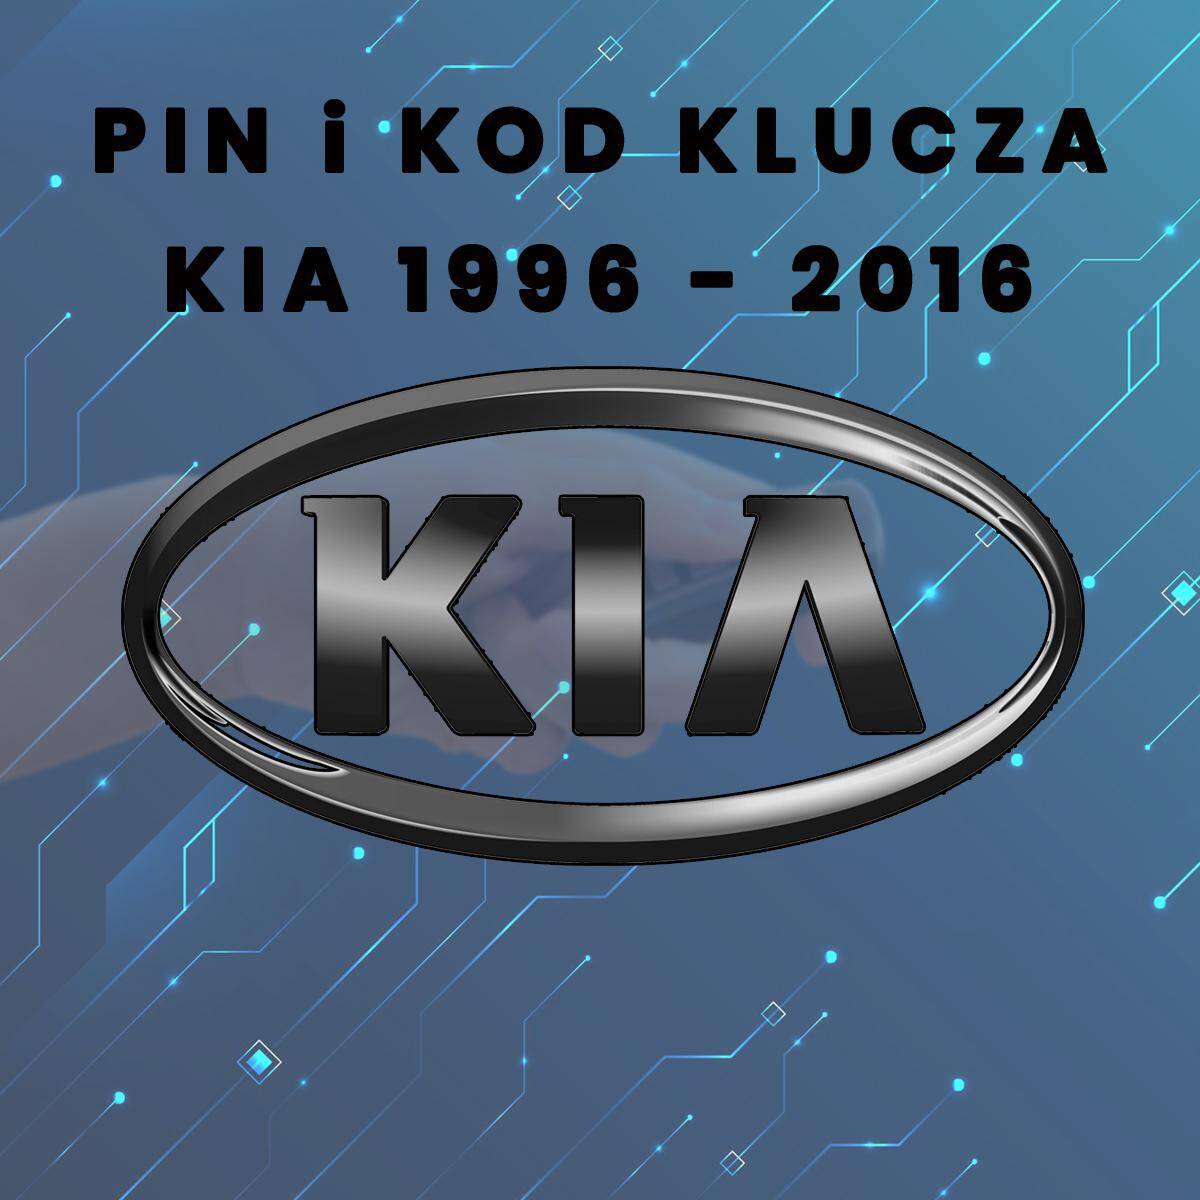 Pin i kod klucza Kia rocznik 1996 - 2016